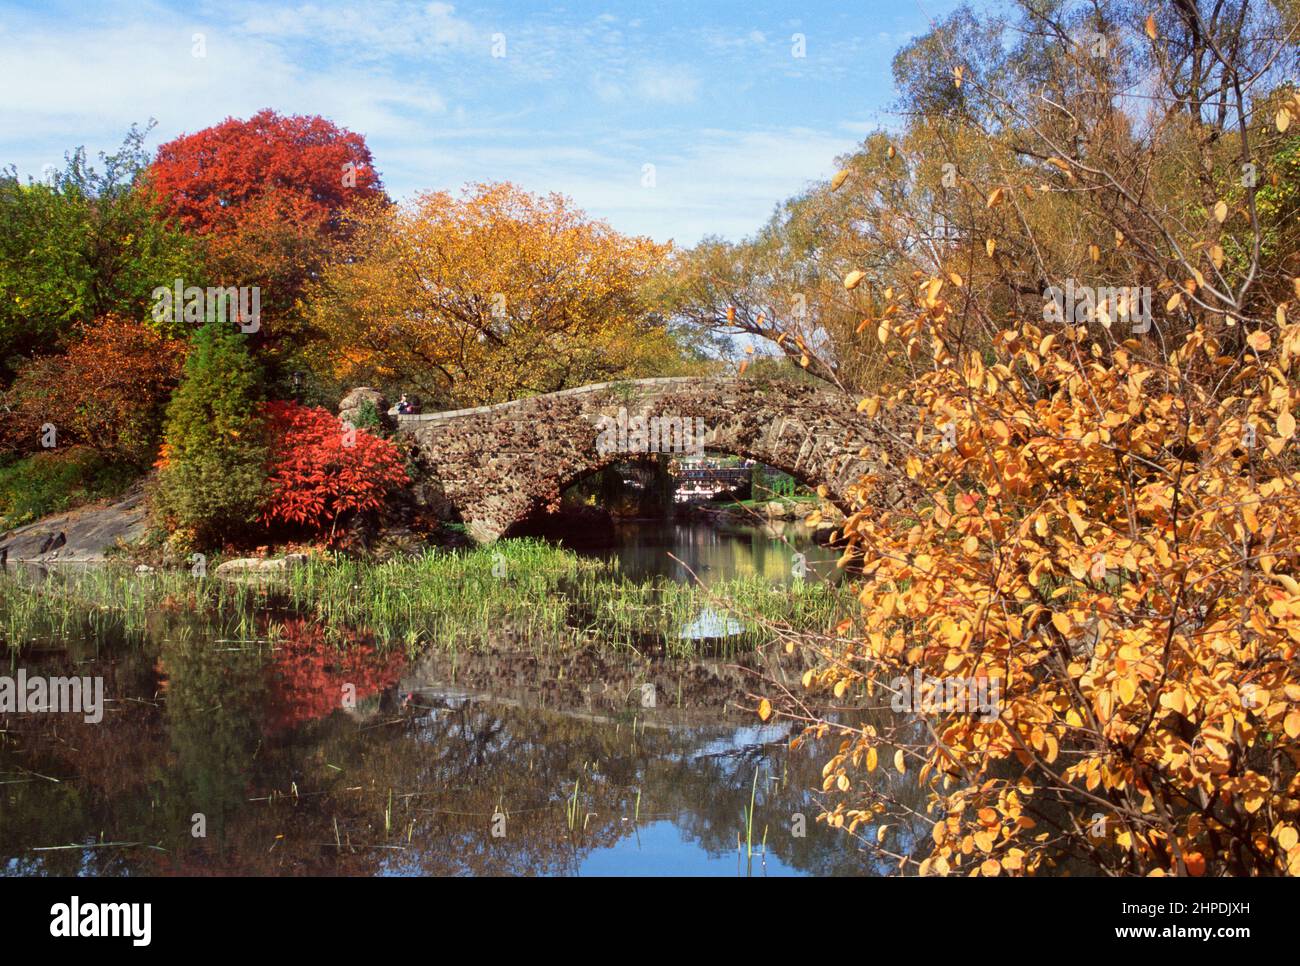 Central Park à New York feuillage d'automne. The Pond, Gapstow Bridge, Hallett nature Sanctuary, Central Park Conservancy. New York, États-Unis Banque D'Images